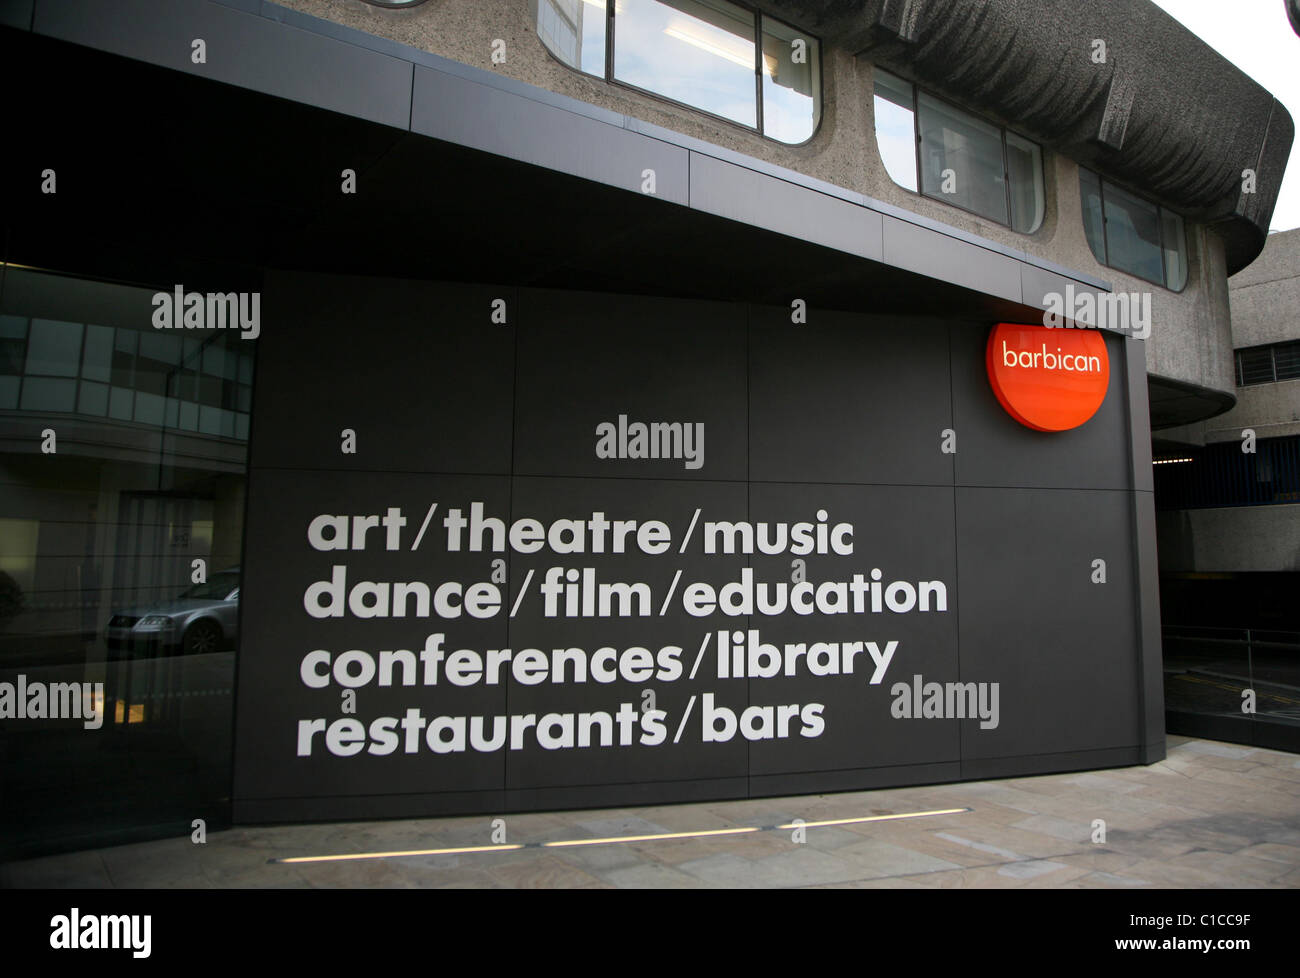 General View gv of the Barbican Centre, a multi-arts centre venue in Barbican, London, England. Stock Photo